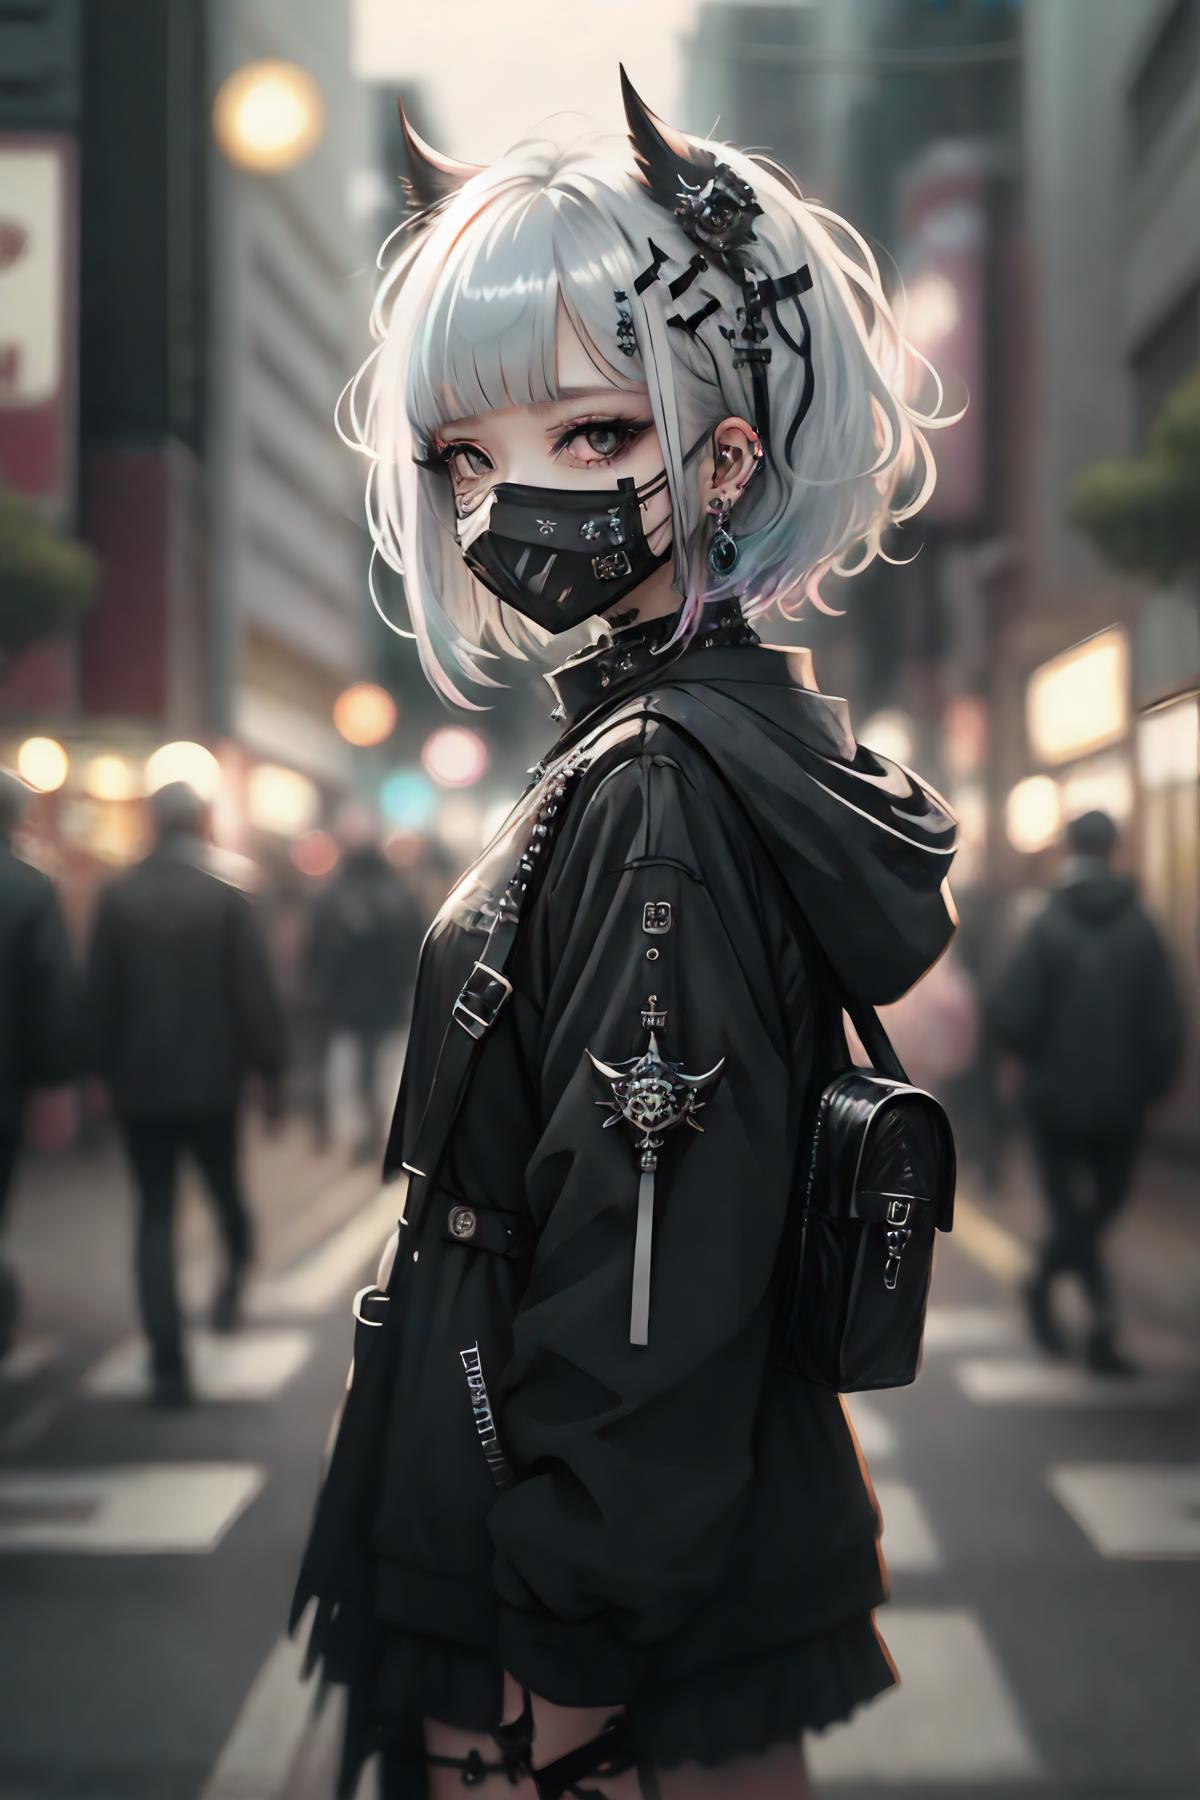 Gothic Punk Girl image by 0_vortex